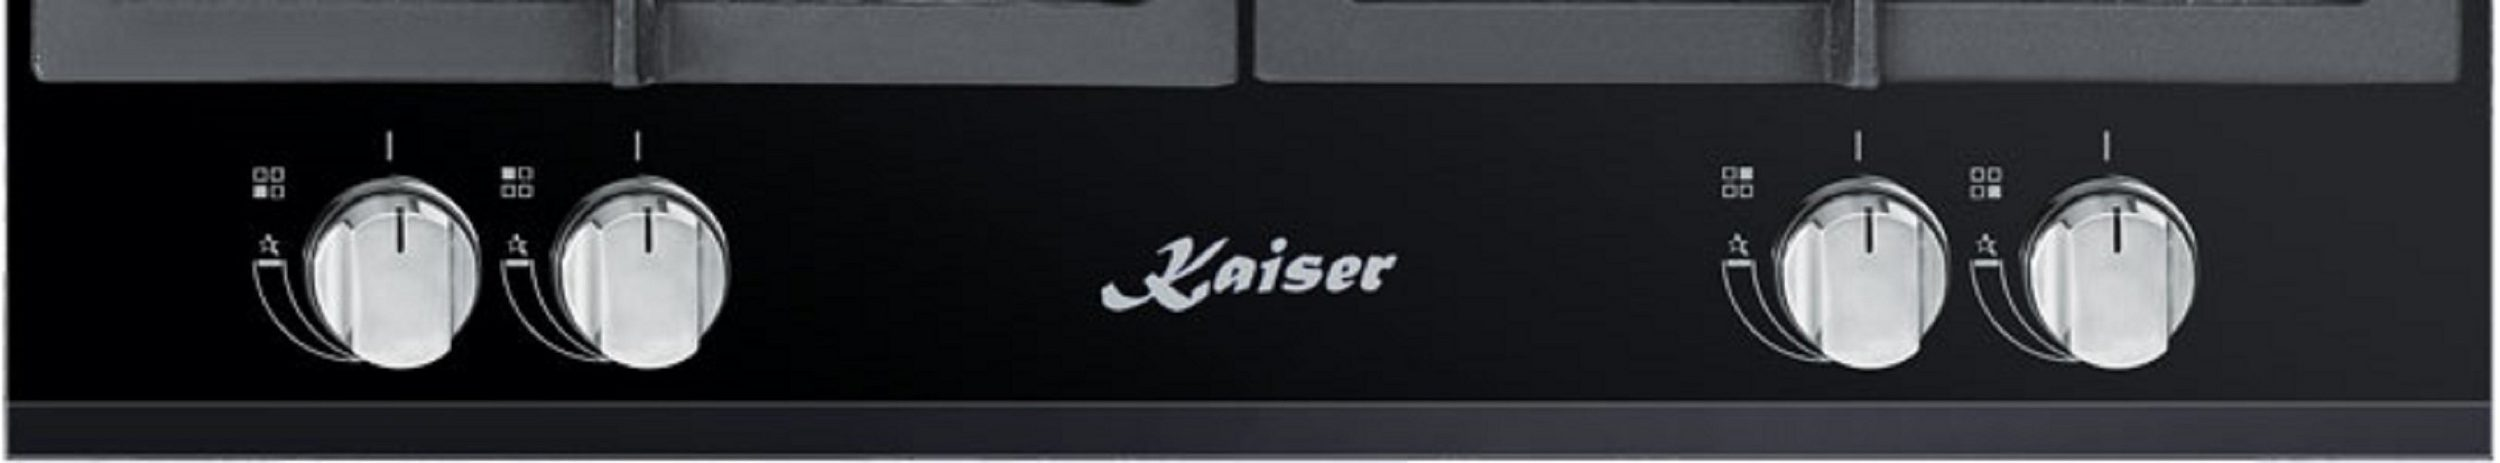 KAISER KCG 6394 Gas (51 cm Kochfelder) breit, 4